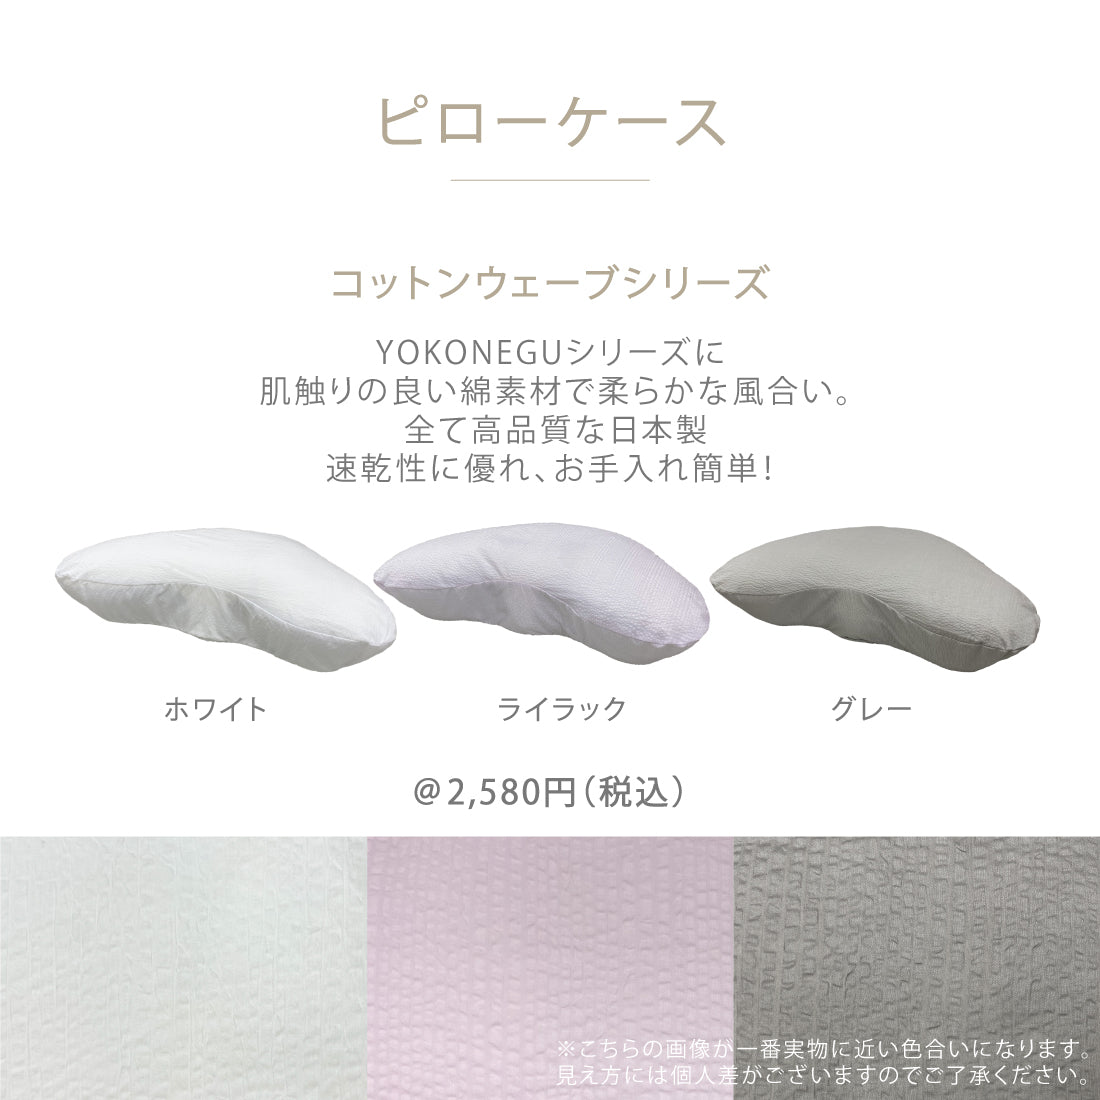 YOKONEGU Premium